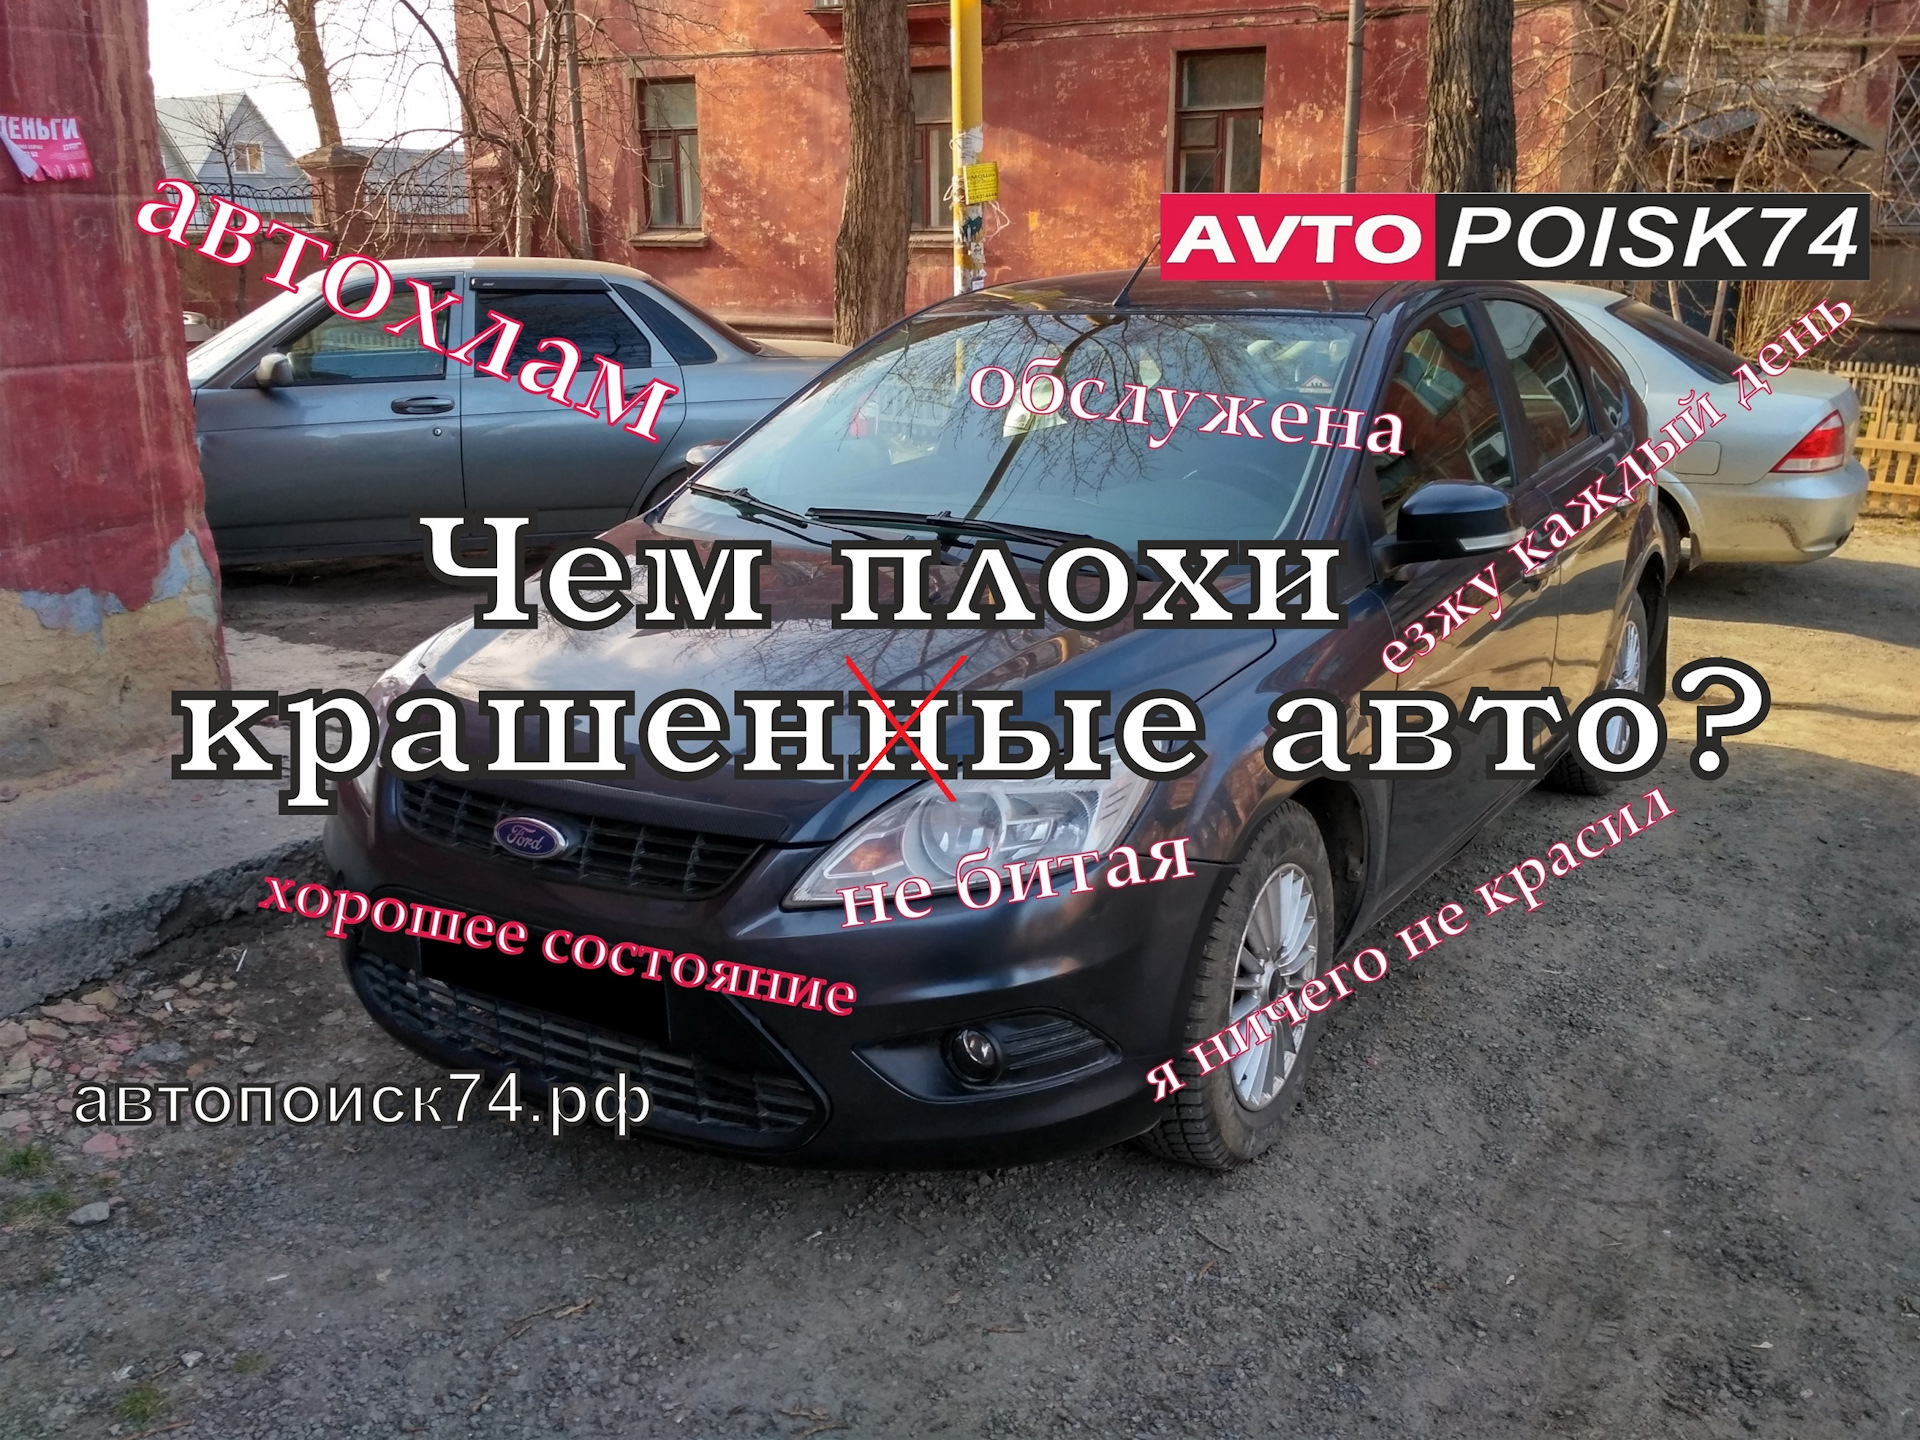 Автомобили Ford Focus 2 - Авто.IronHorse.ру